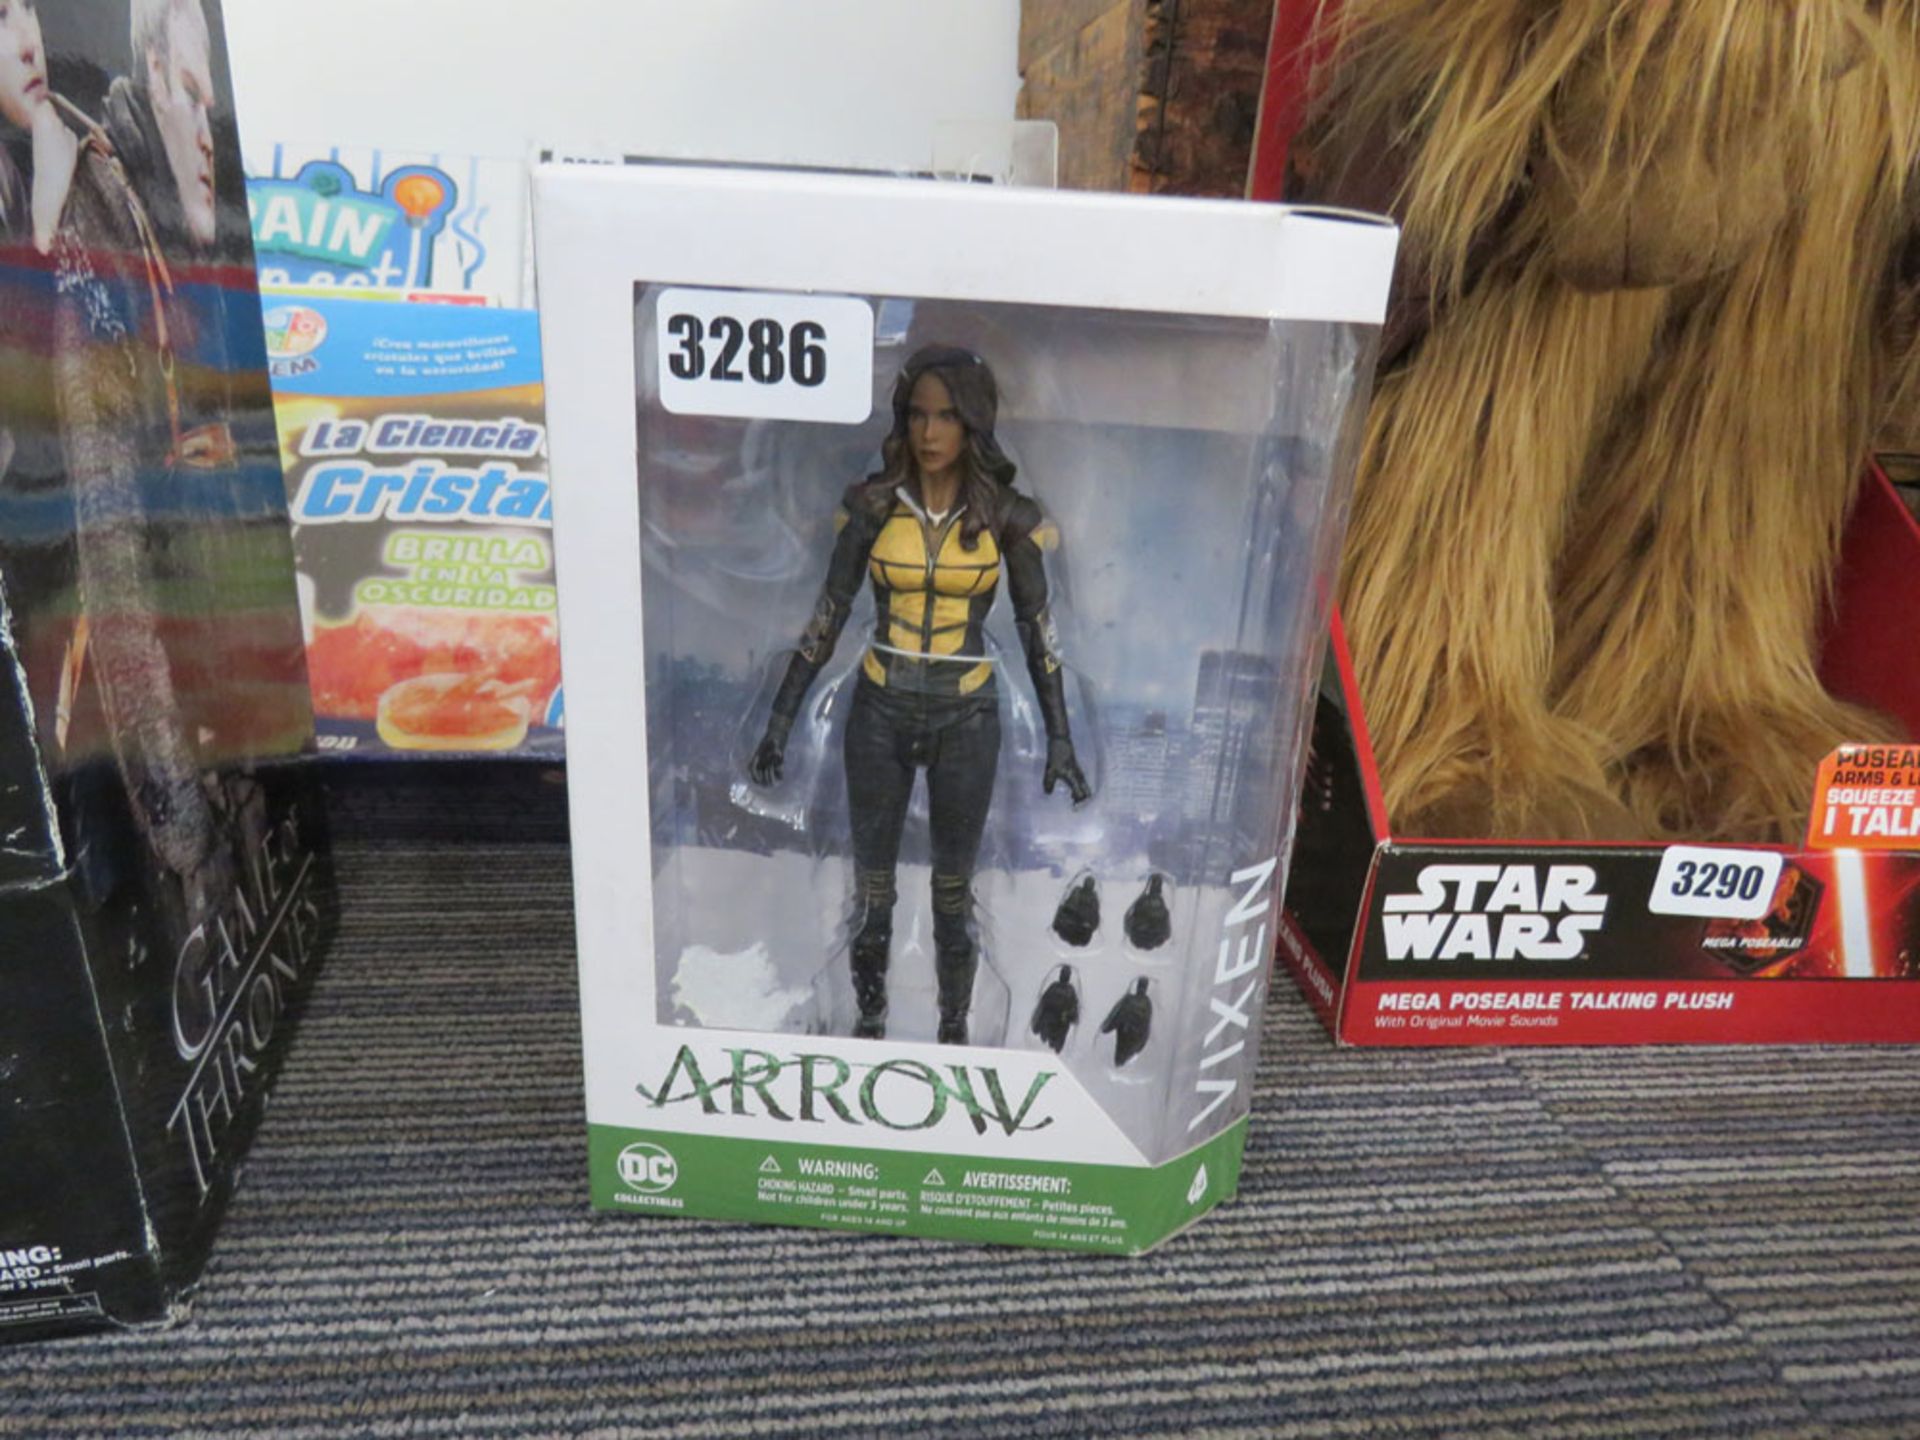 DC Collectible Arrow Vixen figurine in box